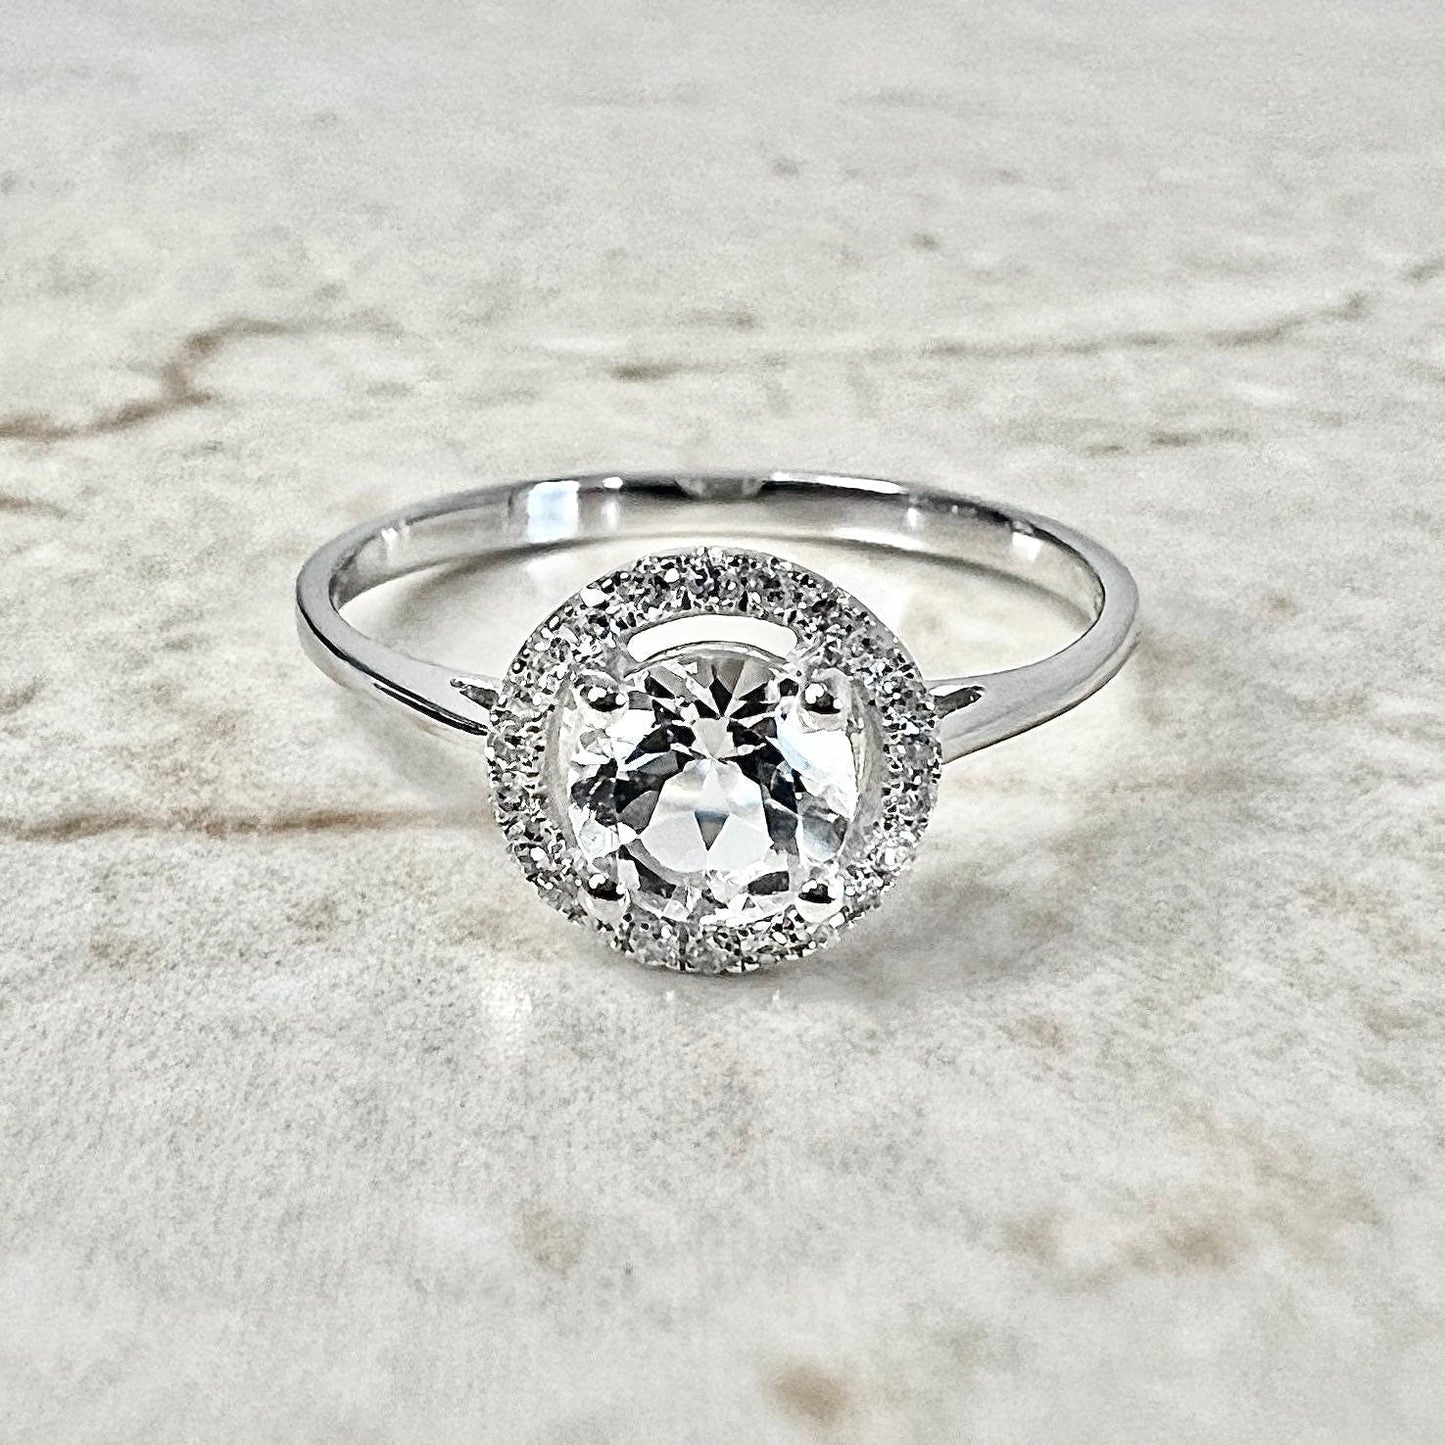 14K Round White Topaz Halo Ring - White Gold White Topaz Ring - Diamond Halo Ring - Topaz Promise Ring - November Birthstone - Birthday Gift